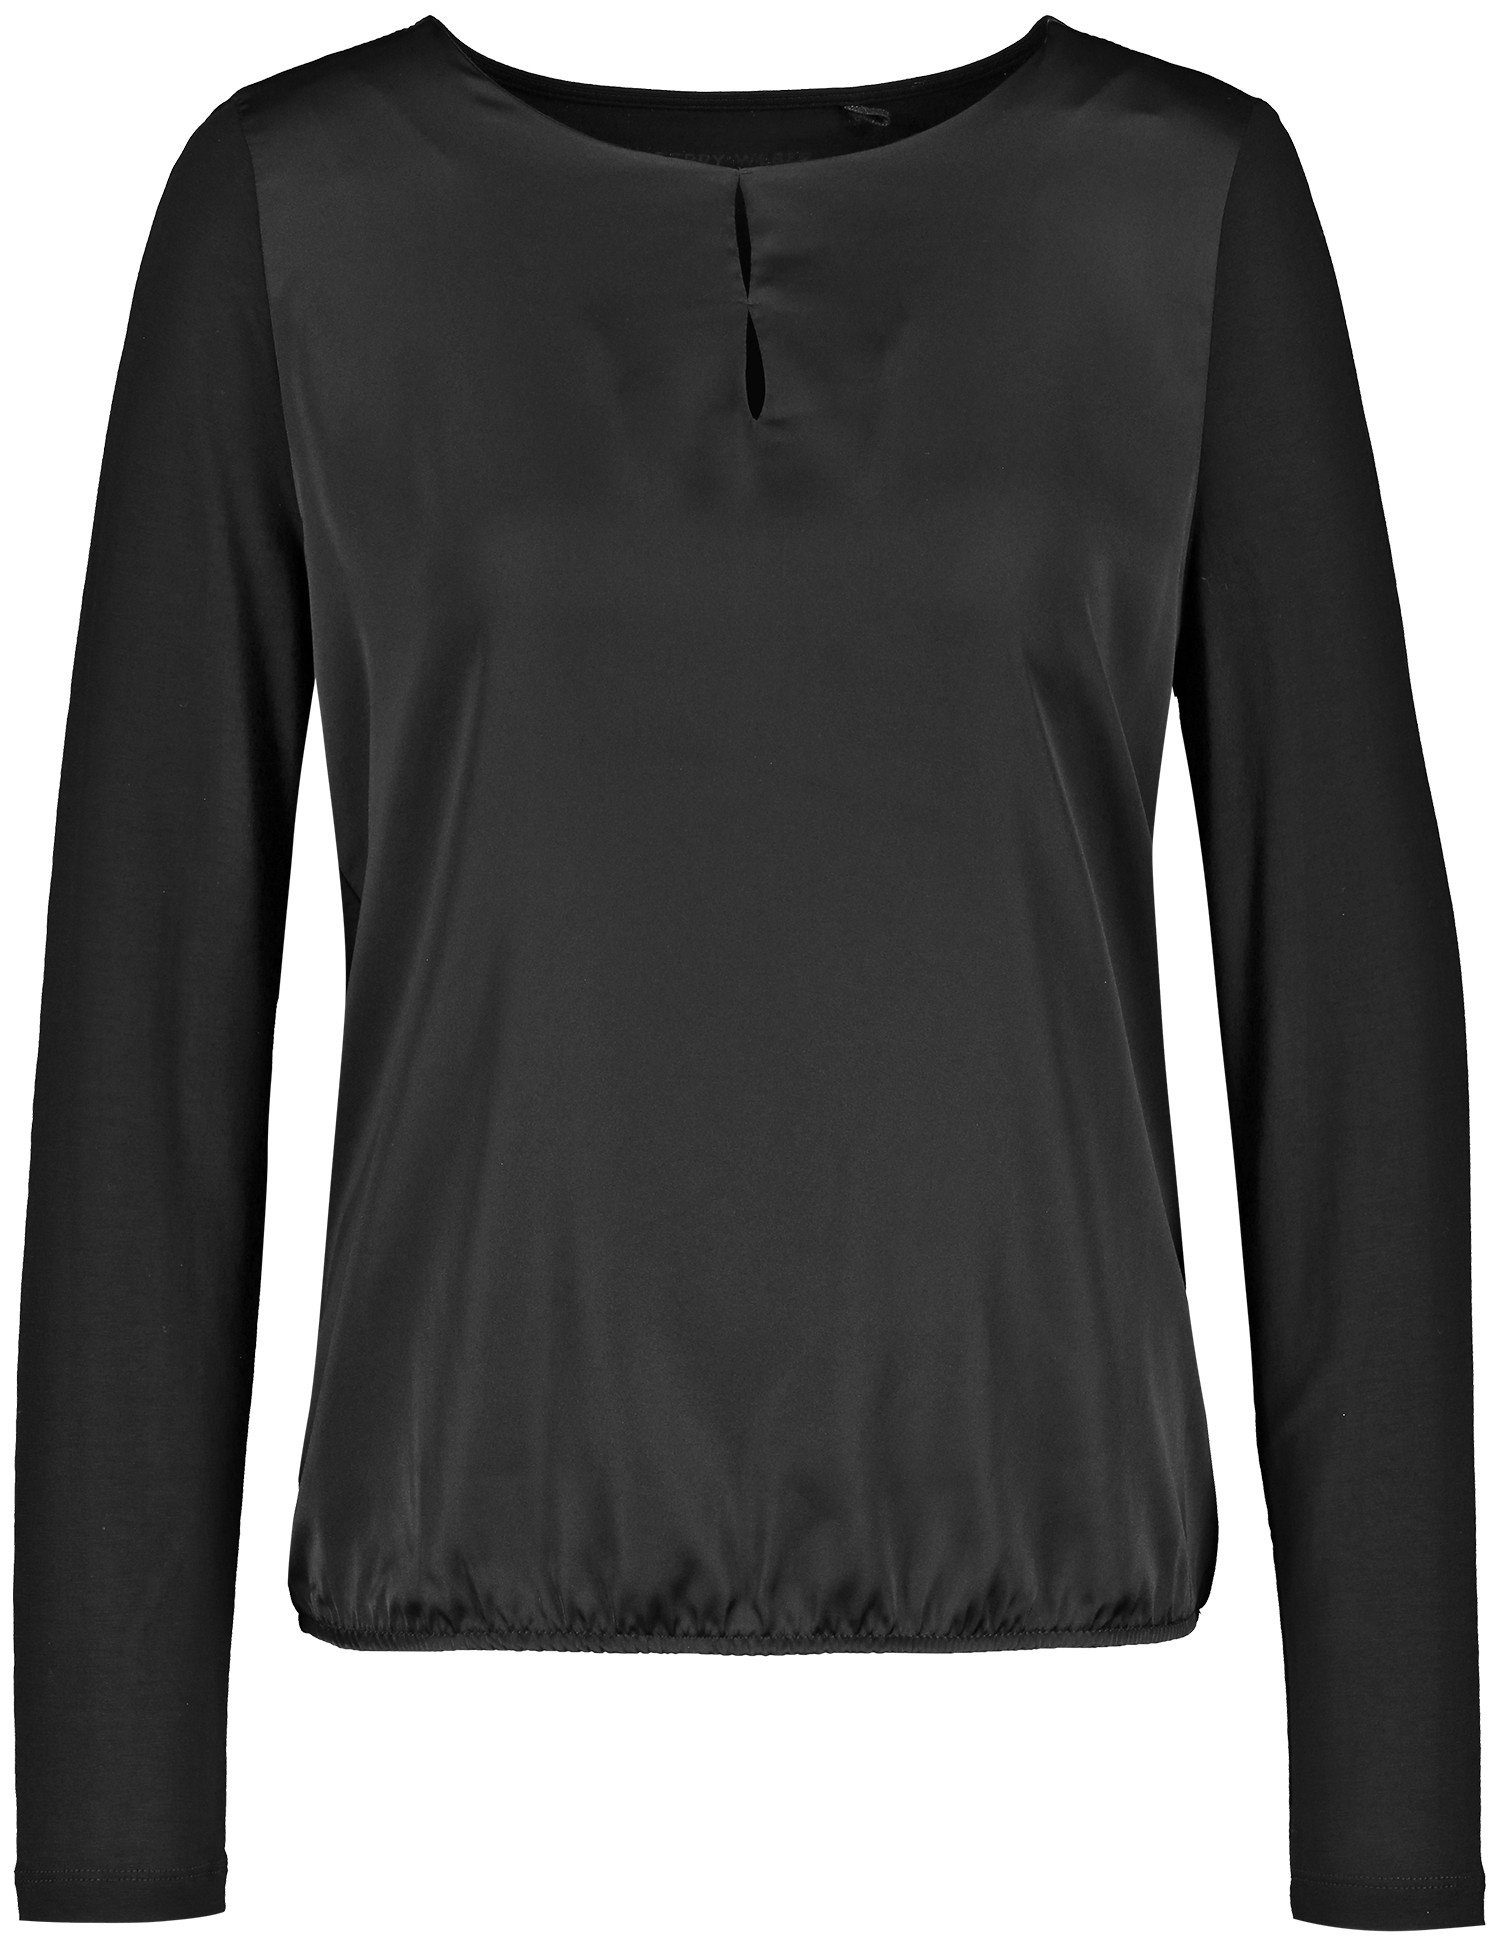 Saum mit WEBER GERRY elastischem Langarmshirt Schwarz Blusenshirt und Material-Patch